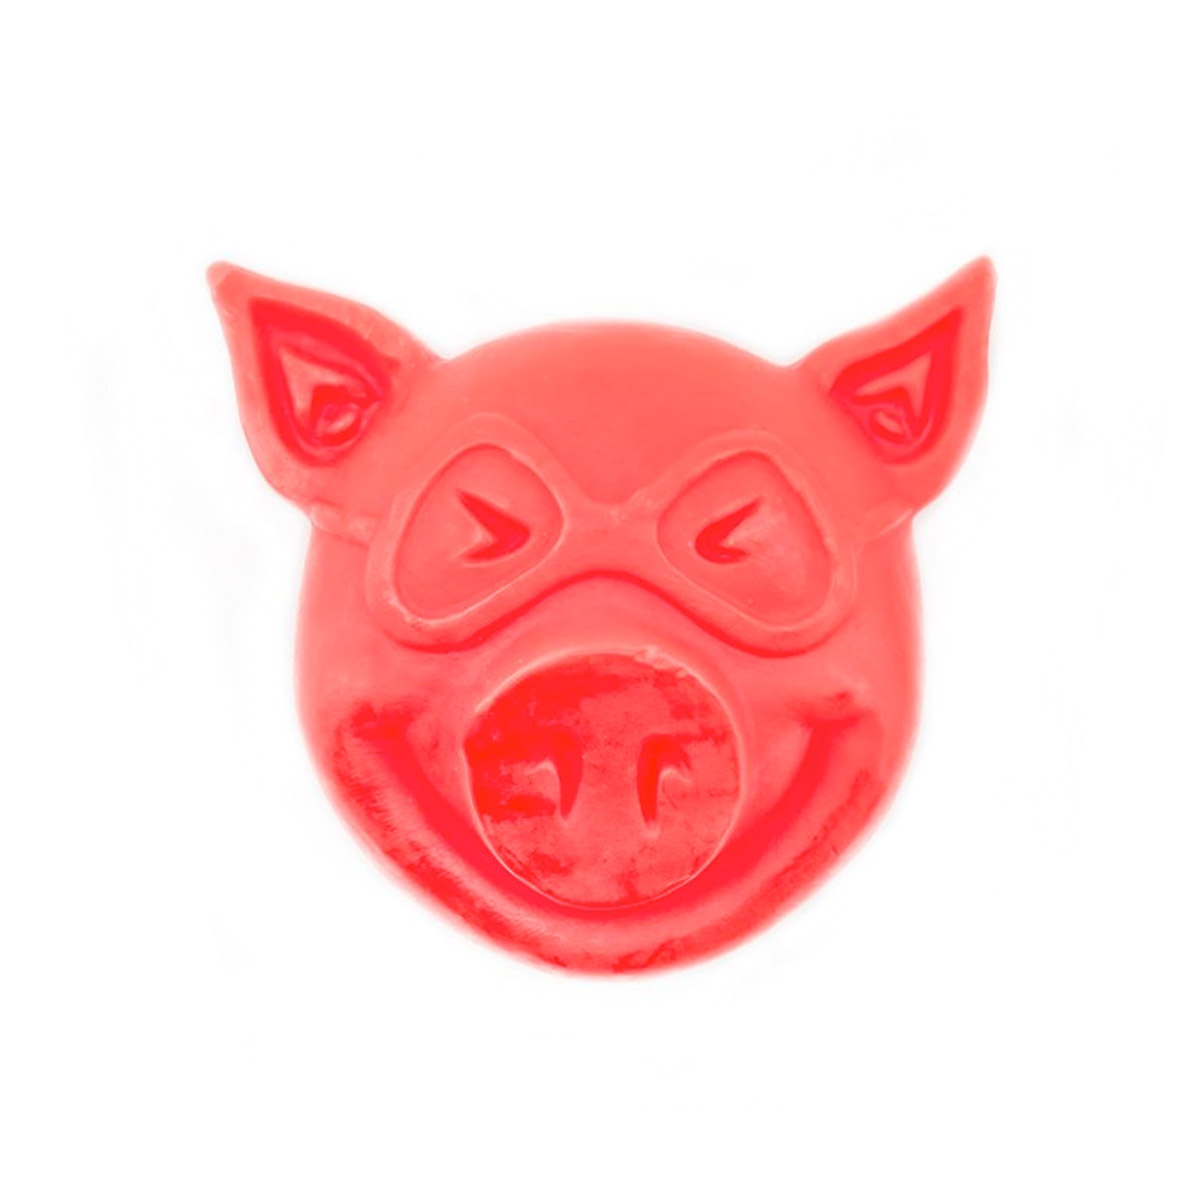 Pig Skatewachs Pig Head Curb Wax (red)